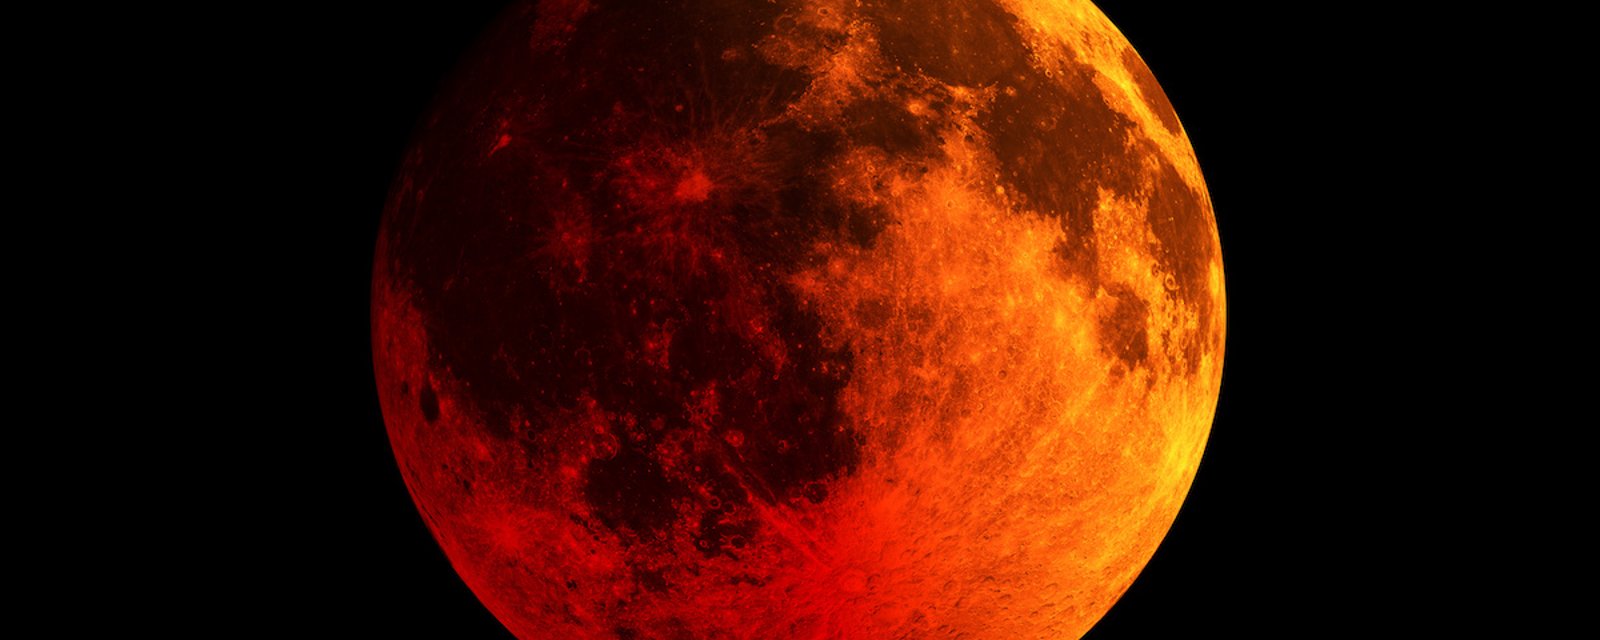 Dans la nuit du 15 au 16, on aura droit à une éclipse lunaire totale 